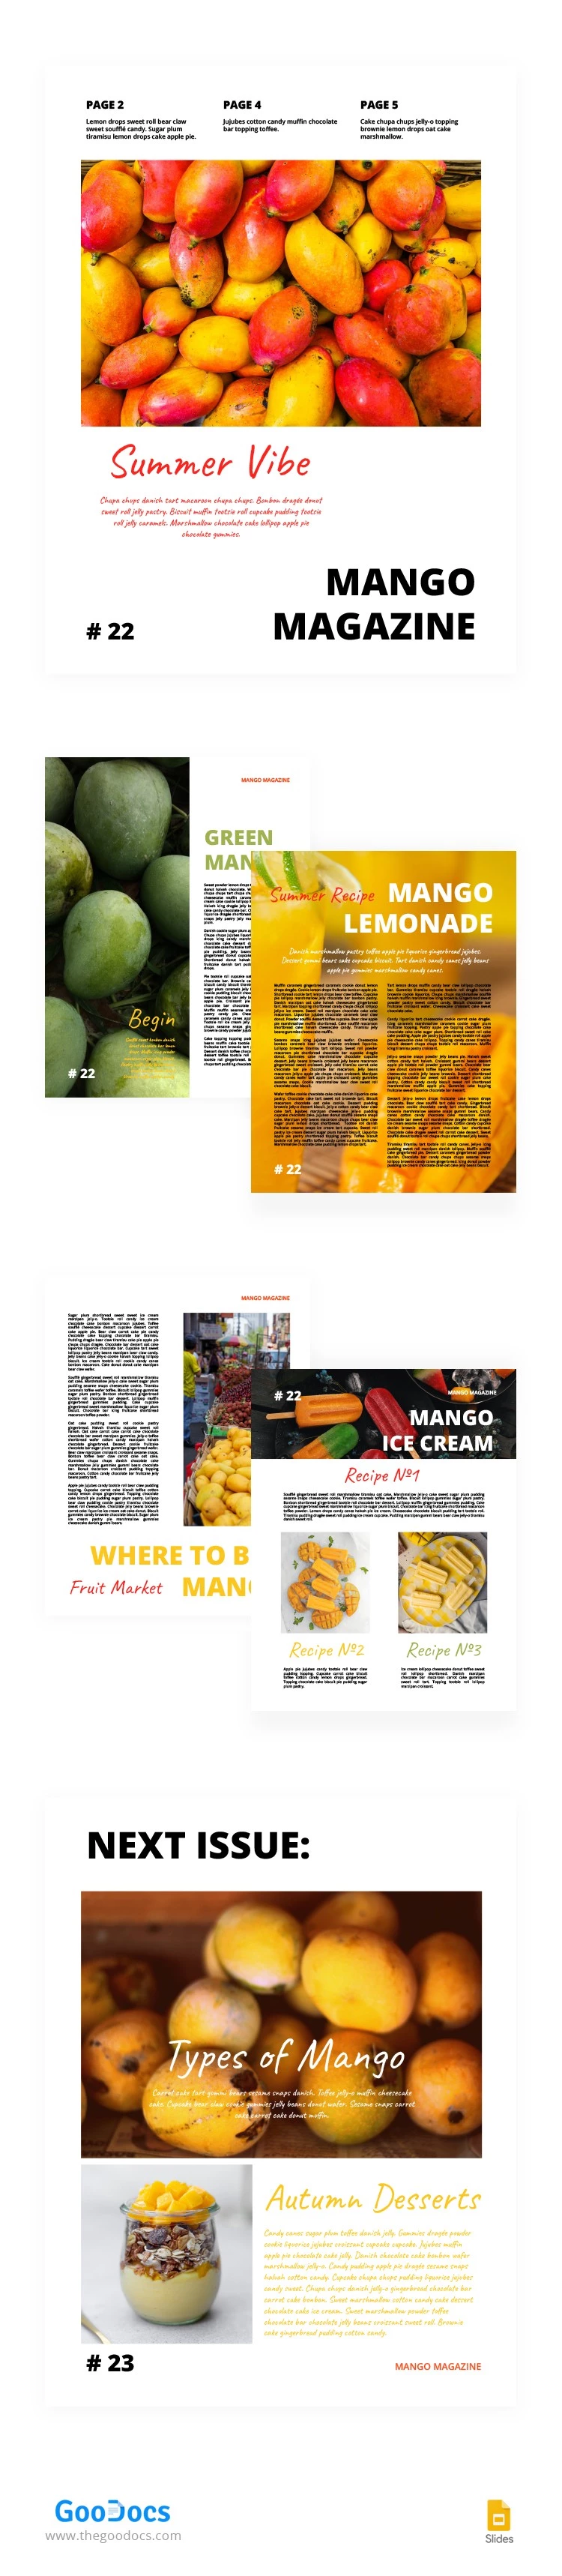 Revista de Frutas Brillantes - free Google Docs Template - 10063860